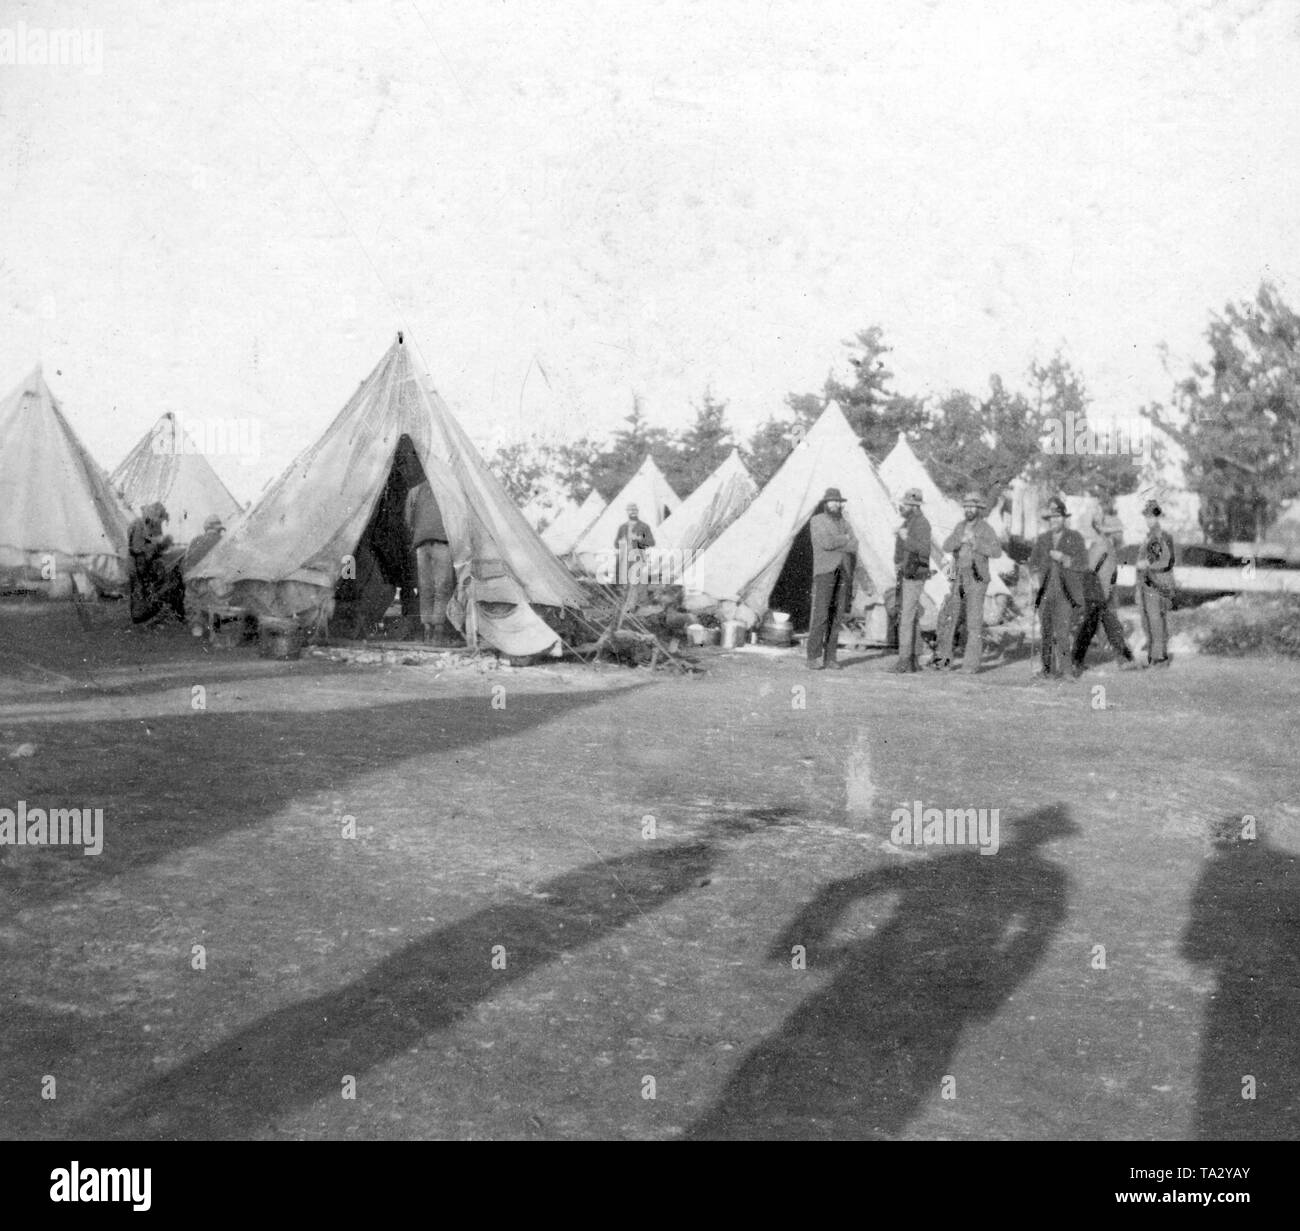 Boers capturés en provenance d'Afrique du Sud, camp de concentration, 1899-1902 : Boers dans un camp de prisonniers sur les Bermudes - camp de prisonniers. Banque D'Images